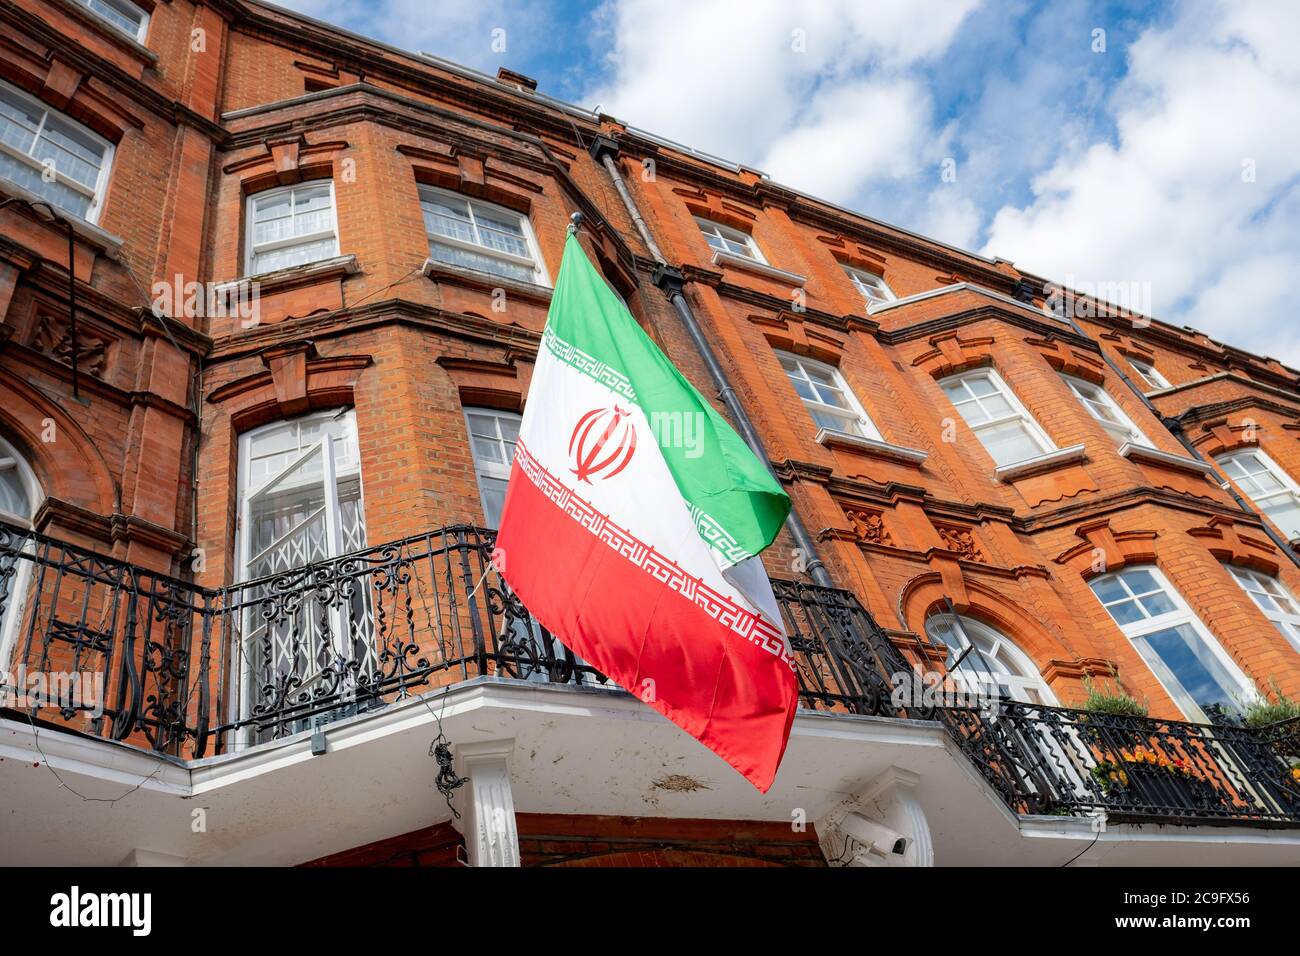 Londres - juillet 2020 : Consulat iranien près de Kensington High Street à l'ouest de Londres Banque D'Images